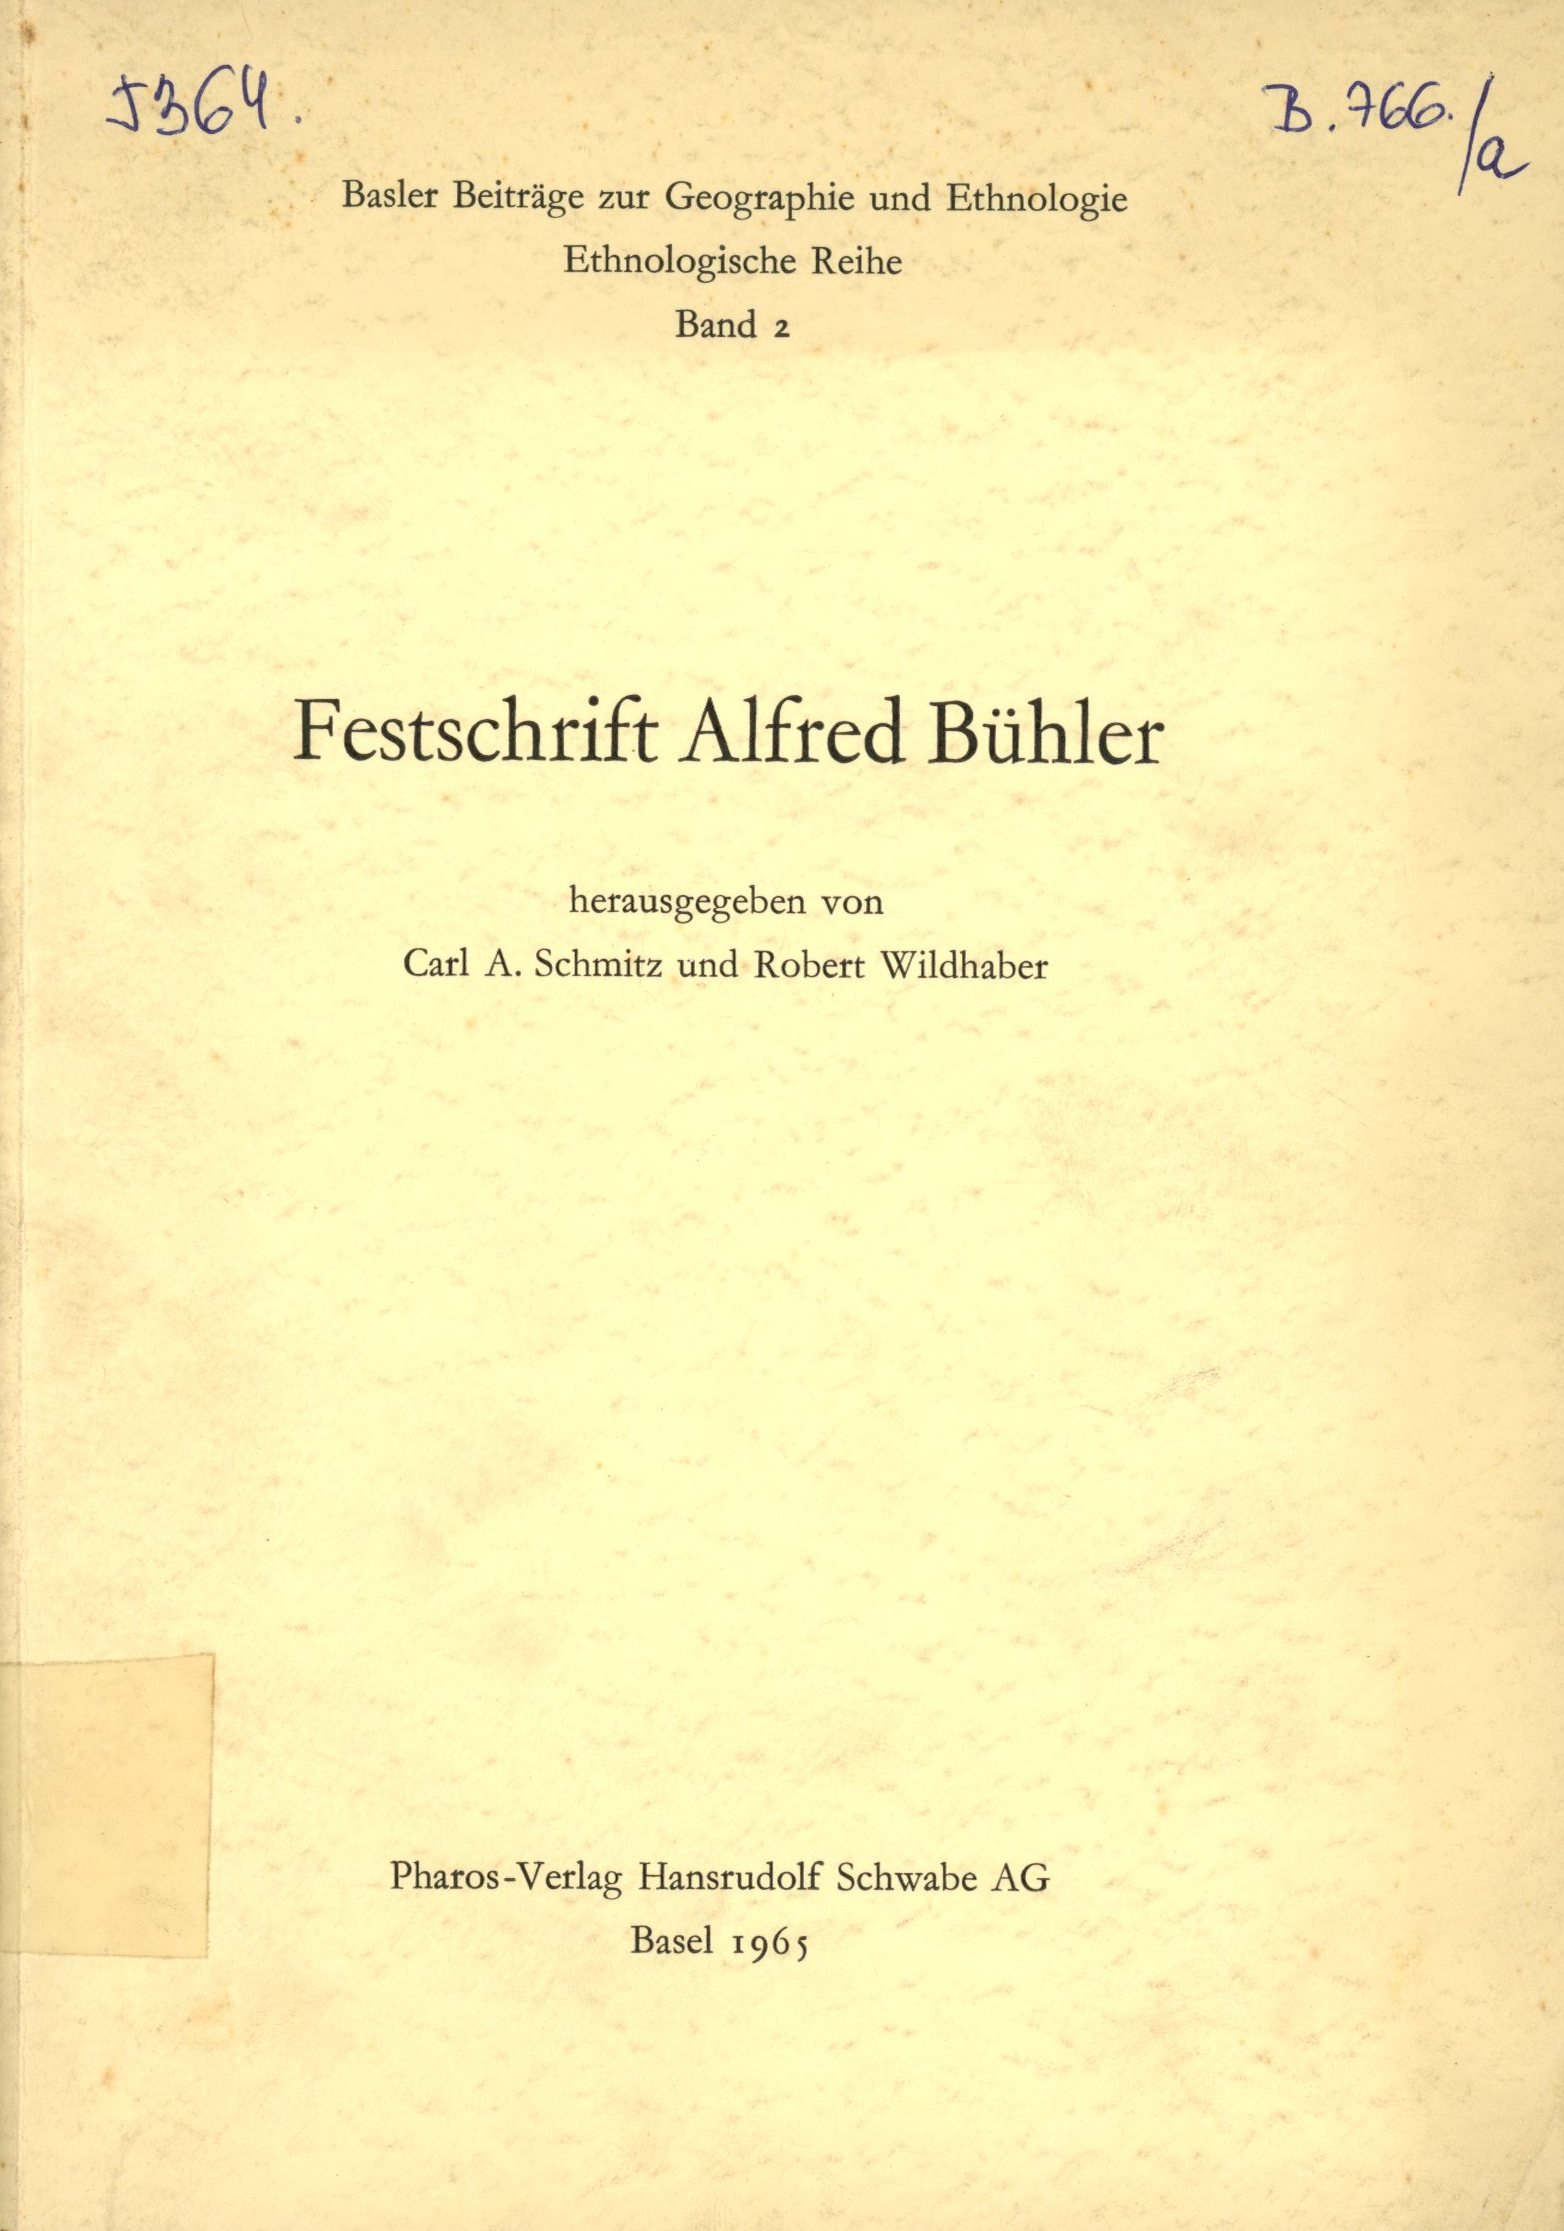 Festschrift Alfred Bühler (Erkel Ferenc Múzeum és Könyvtár, Gyula CC BY-NC-SA)